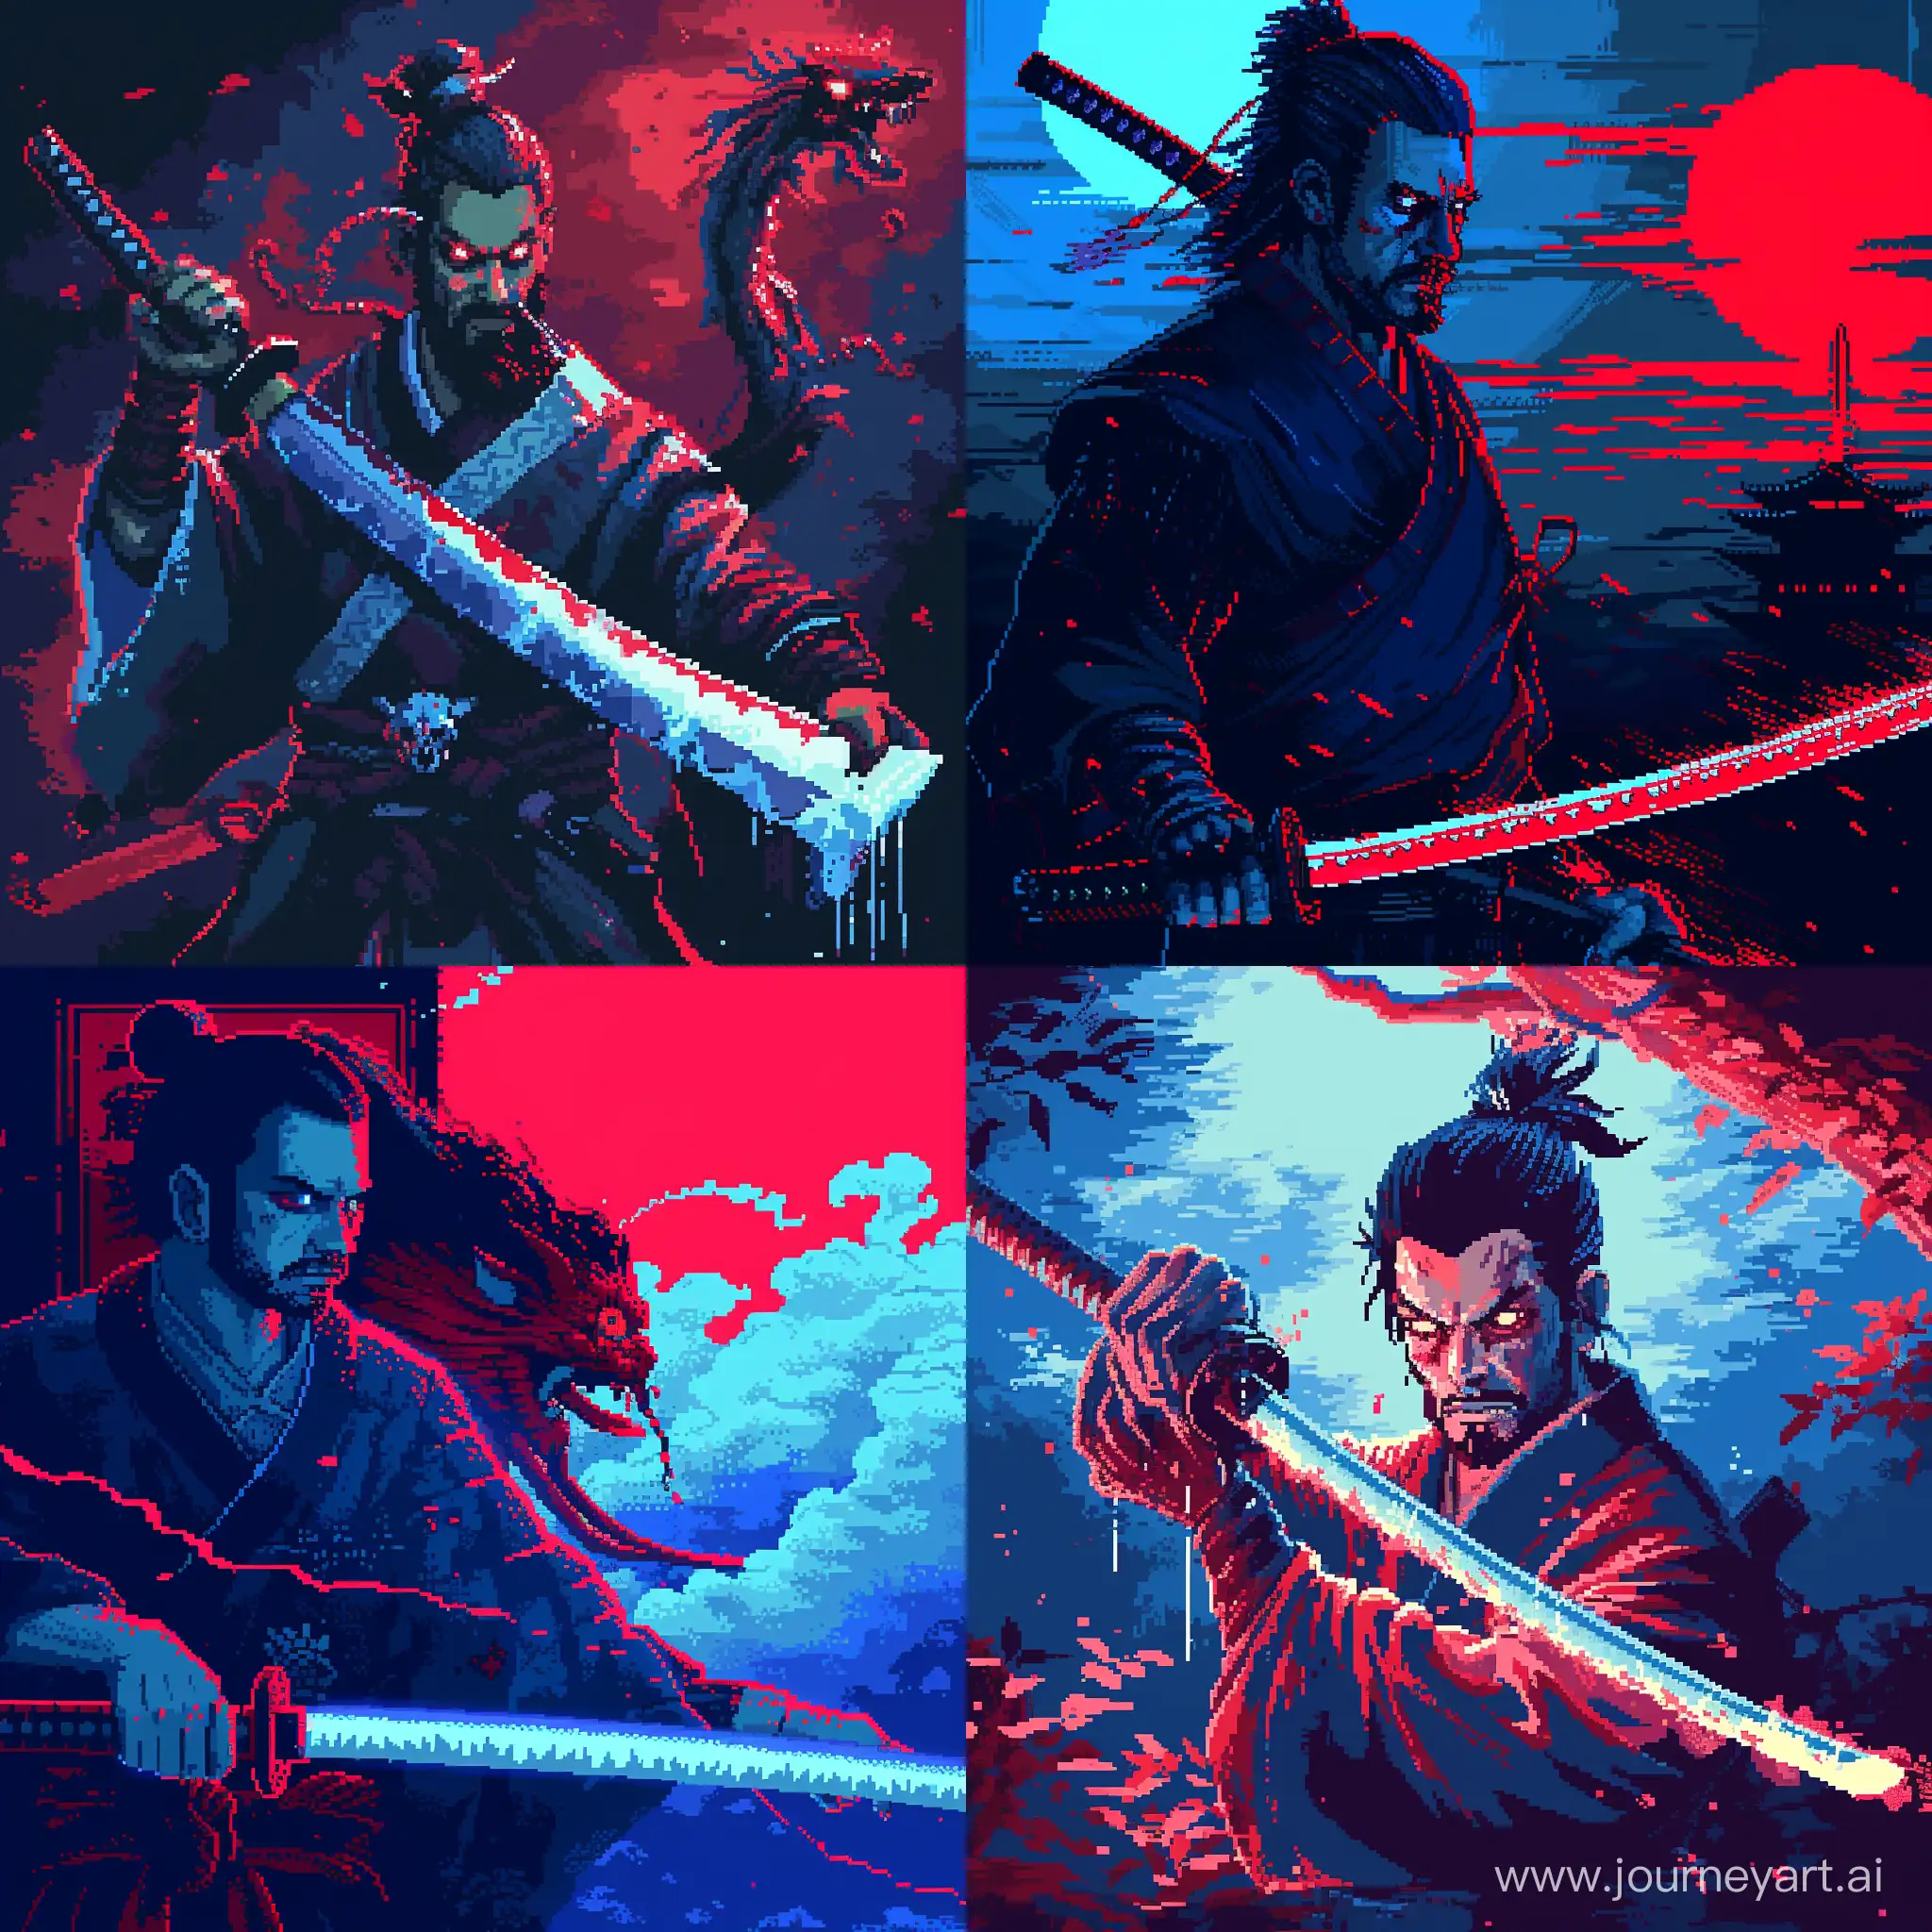 самурай держит катану которым завладел злой дух, ретро стилистика, пиксельарт, синие и красные тона